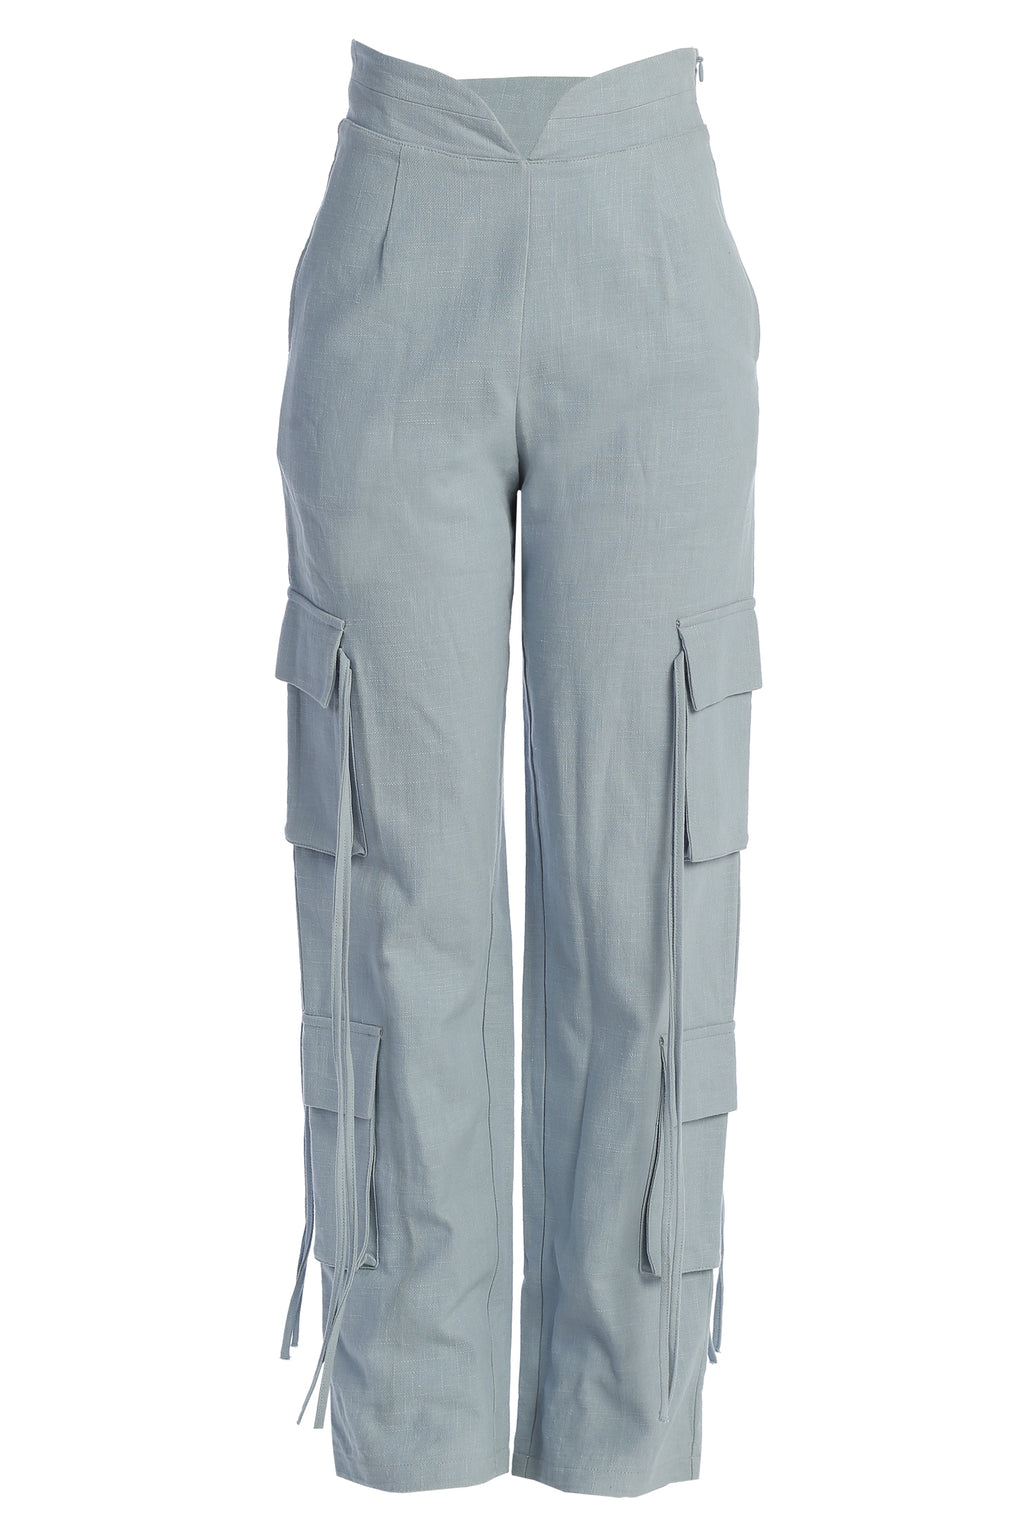 Louis Vuitton Cotton-Linen Cargo Trousers